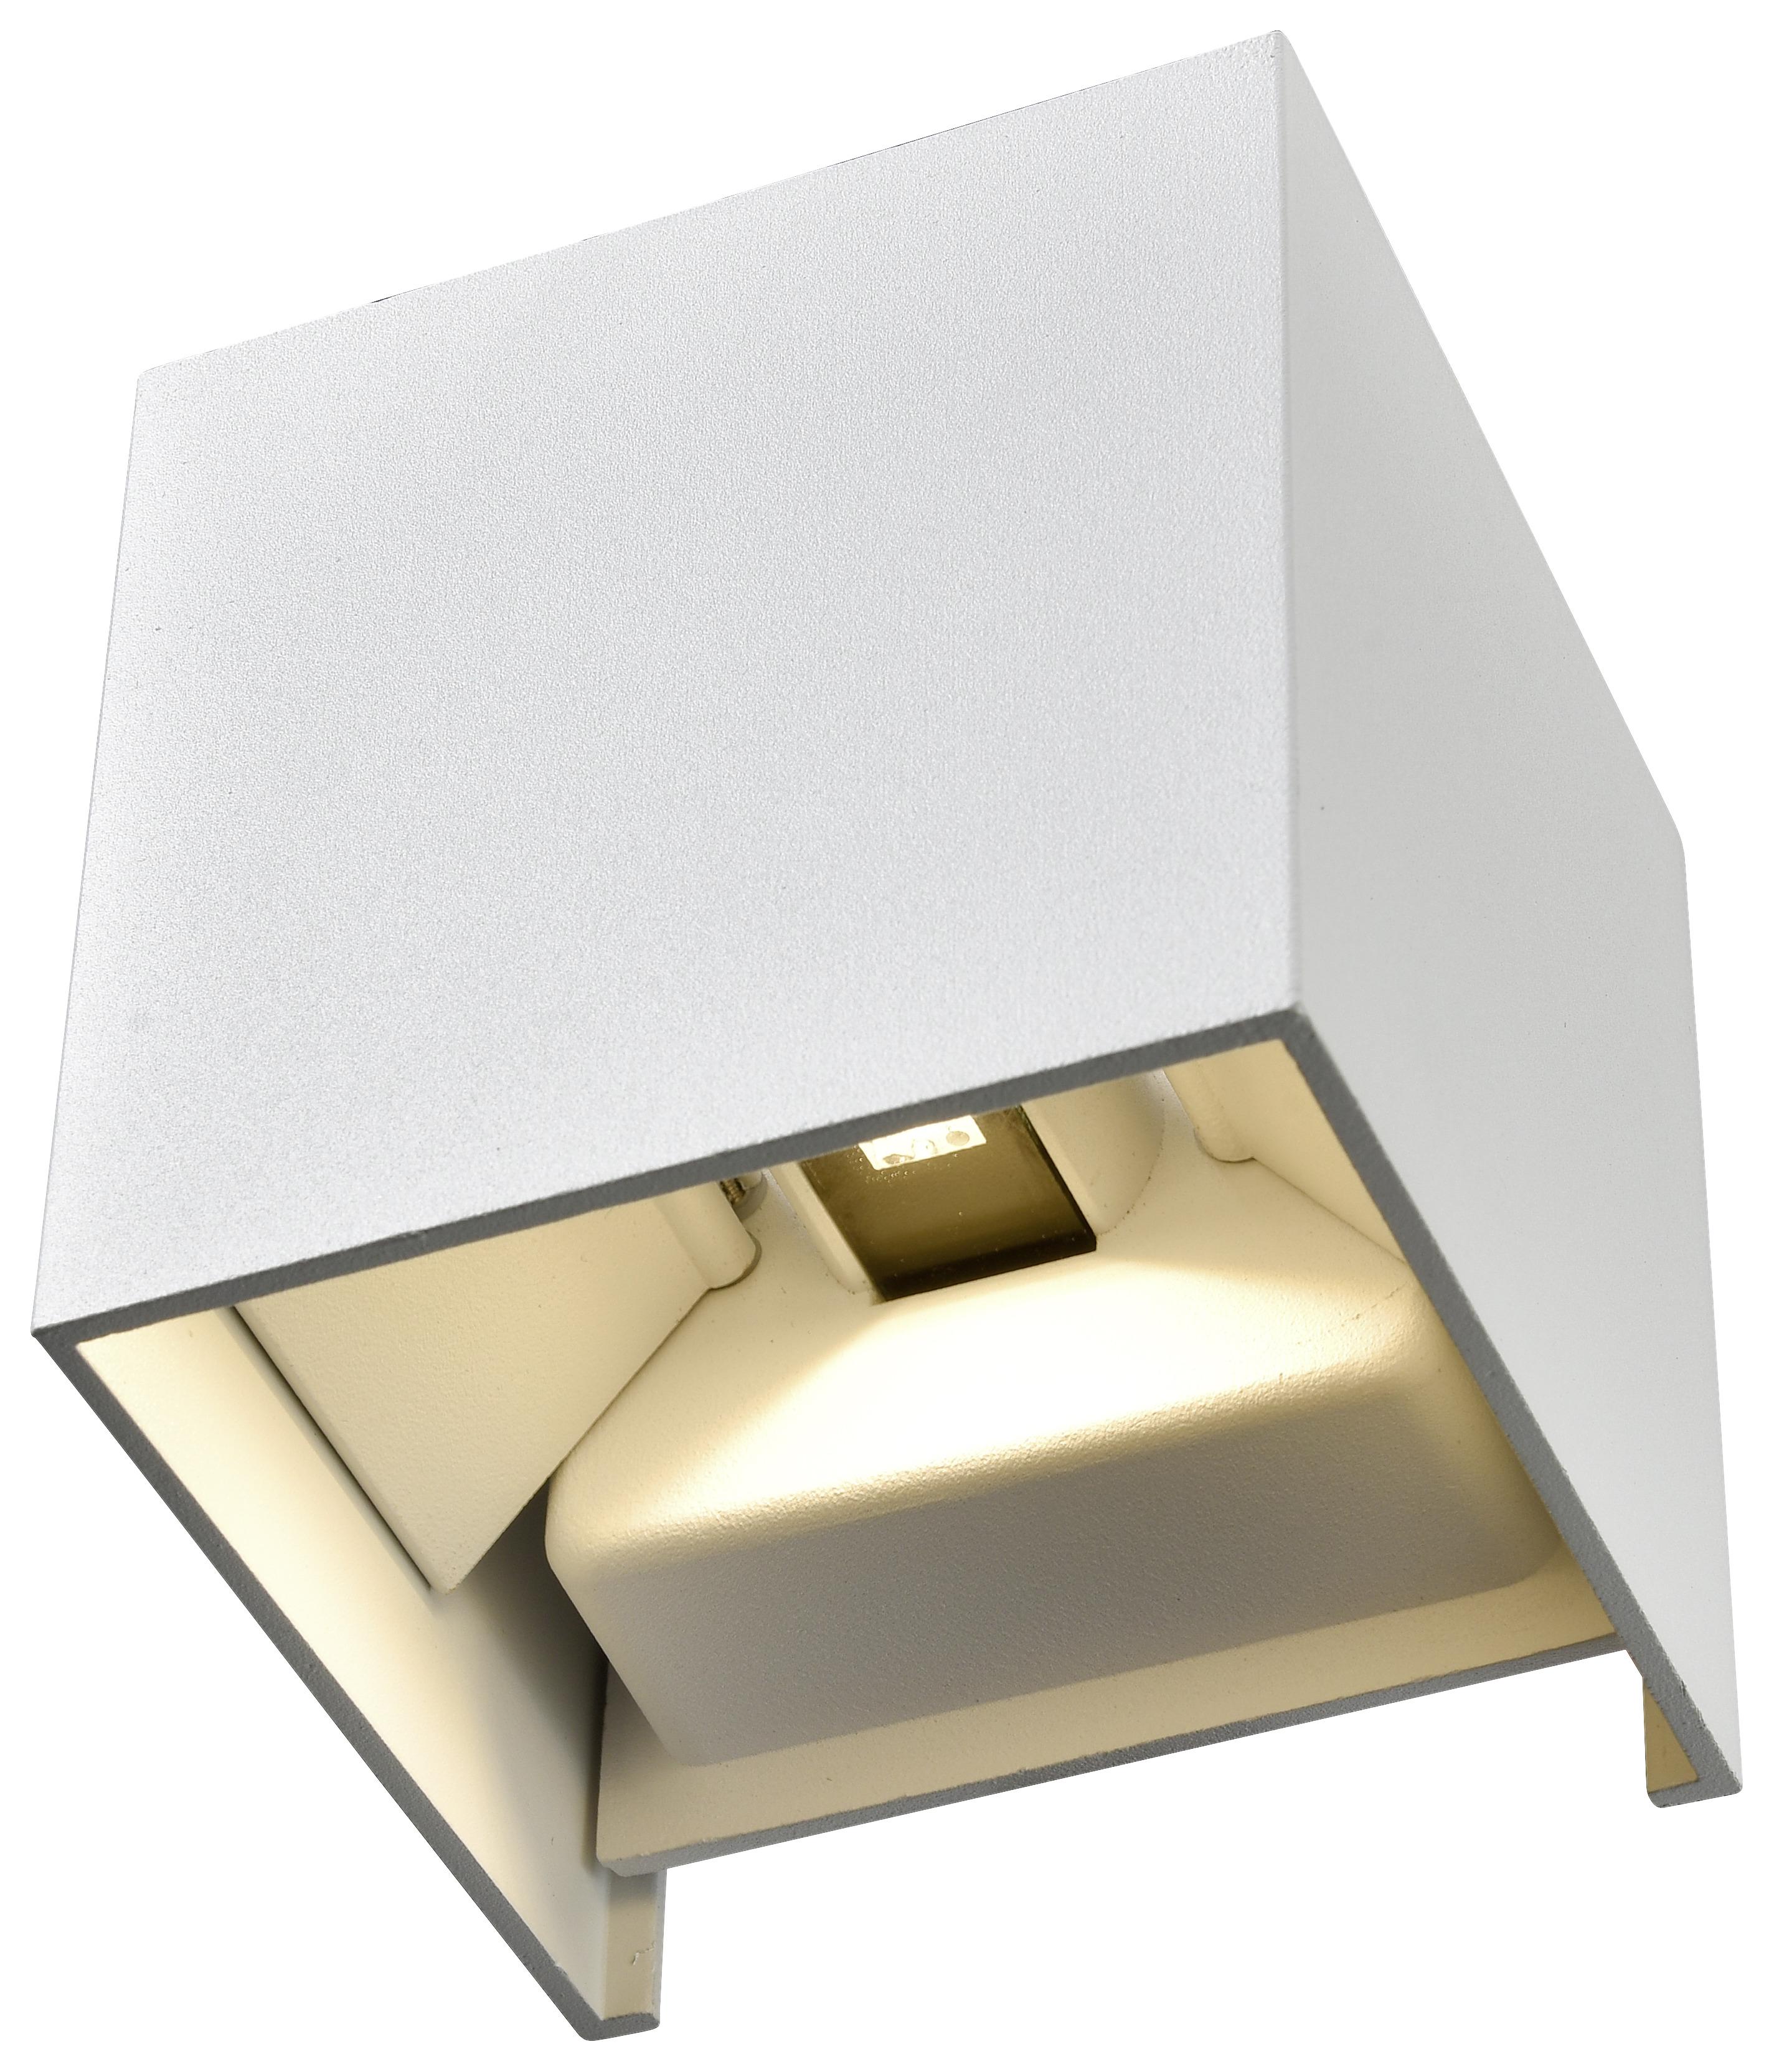 LED-Wandleuchte Kubik max. 7 Watt - Weiss, Lifestyle, Metall (10cm) - Modern Living